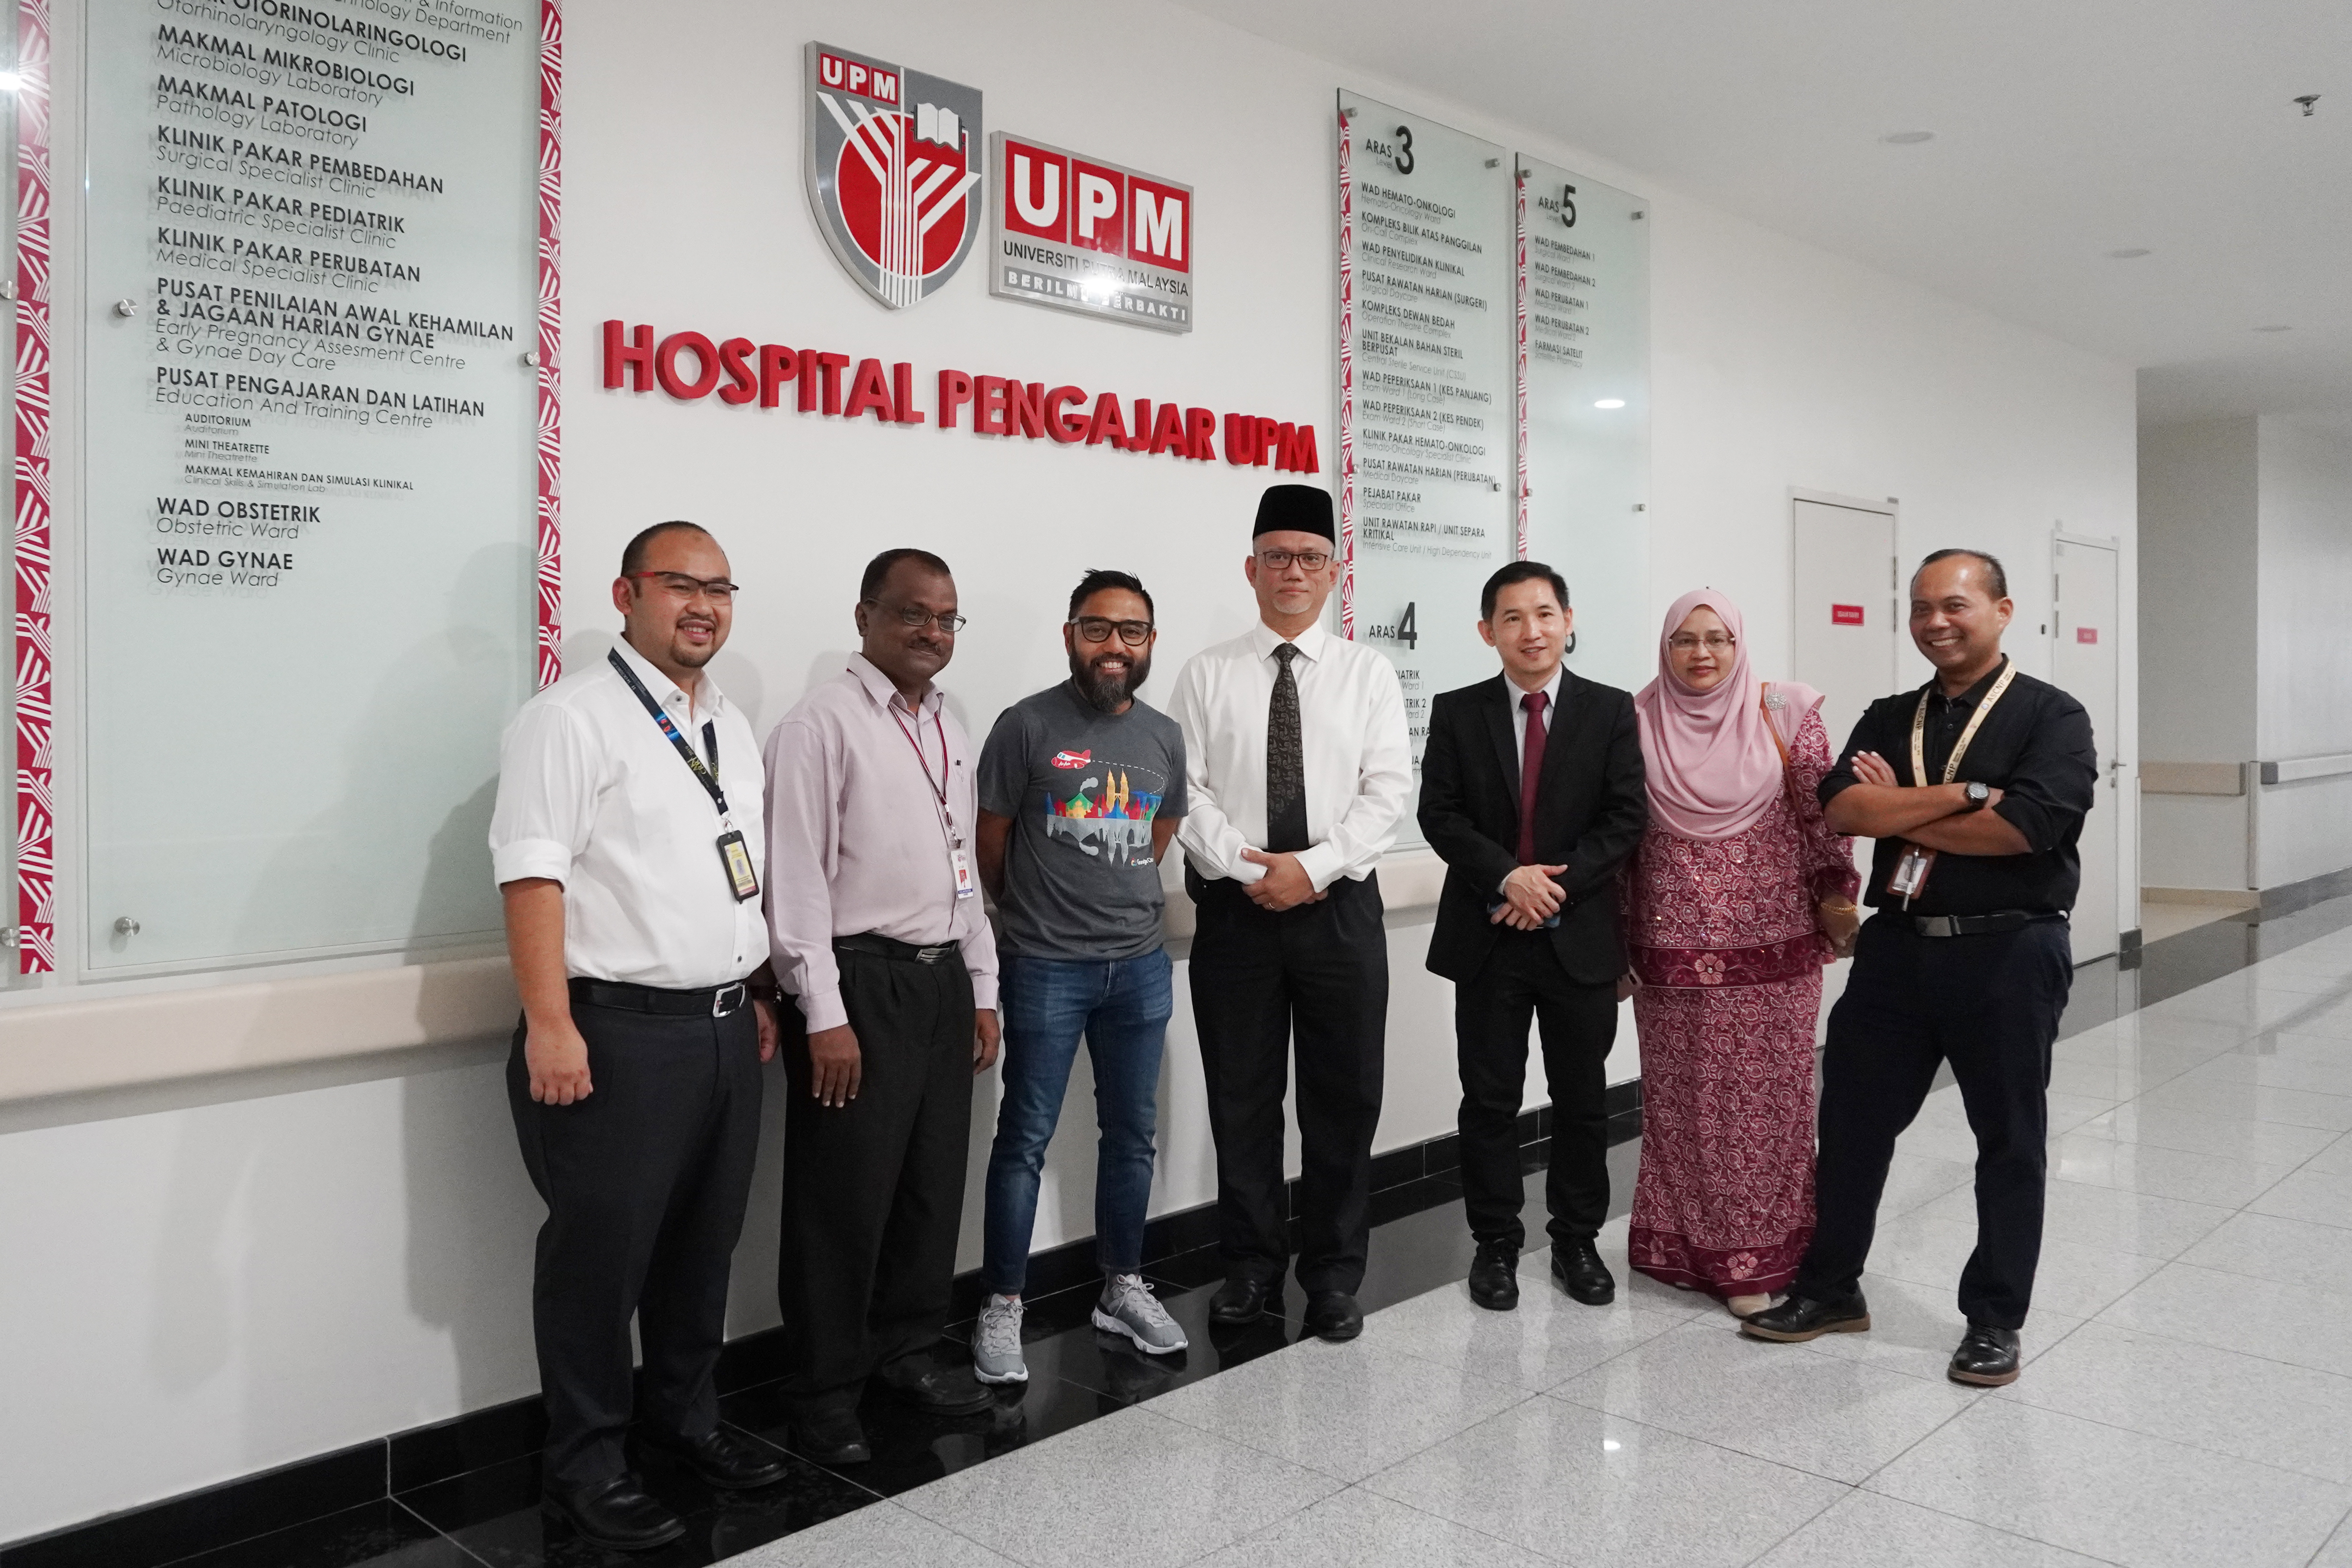 Hospital Pengajar Upm Serdang - Hospital pengajar universiti putra